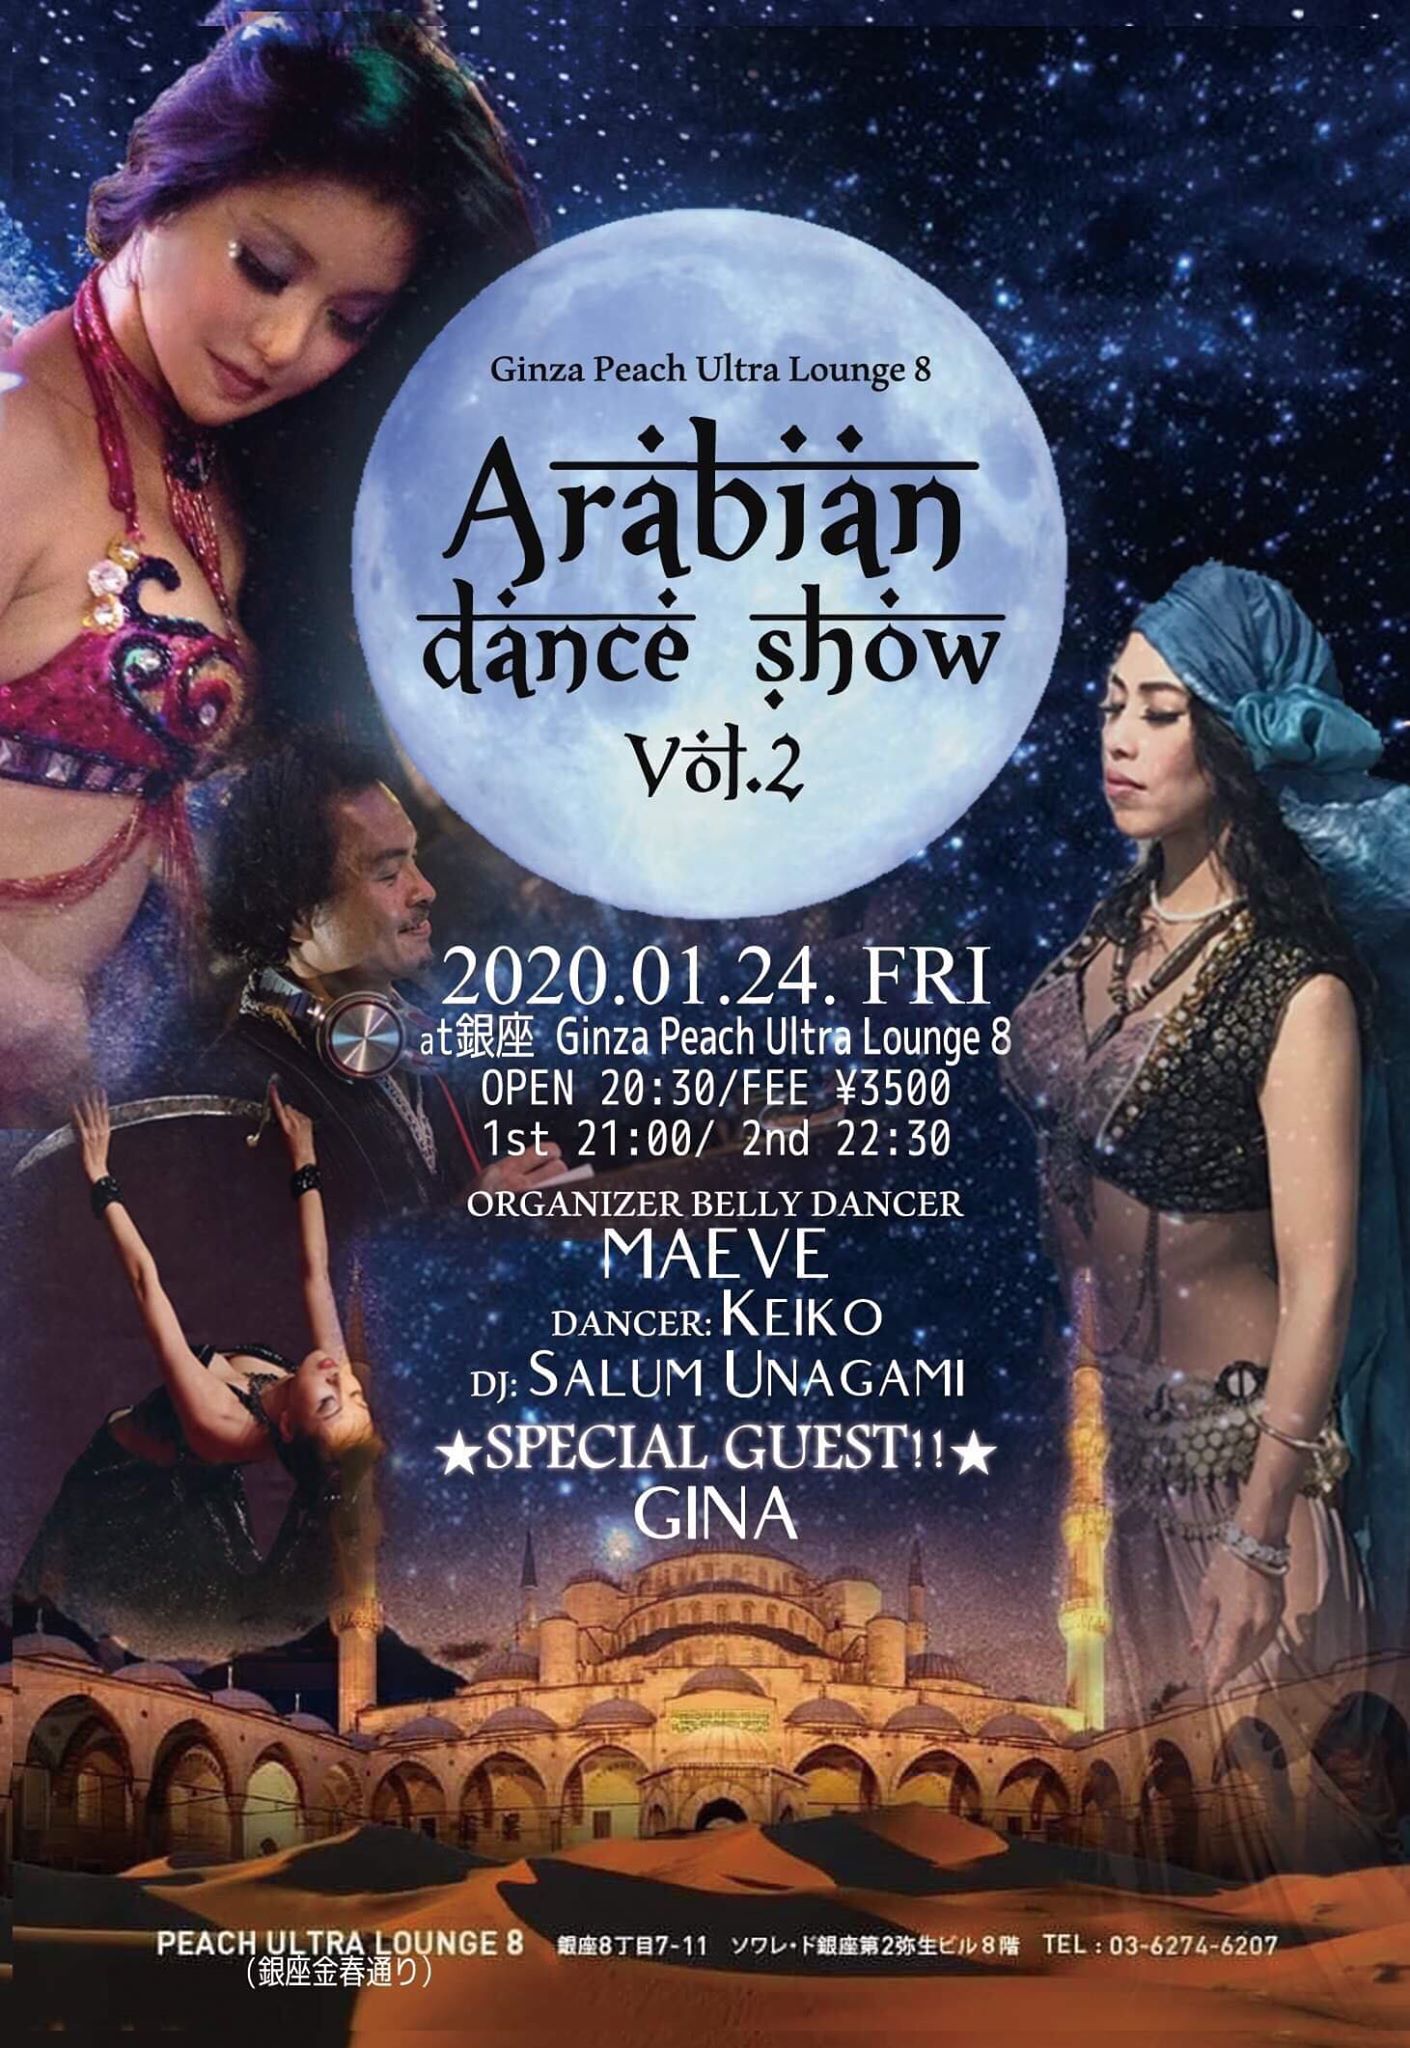 20200124Fri. Arabian Dance Show